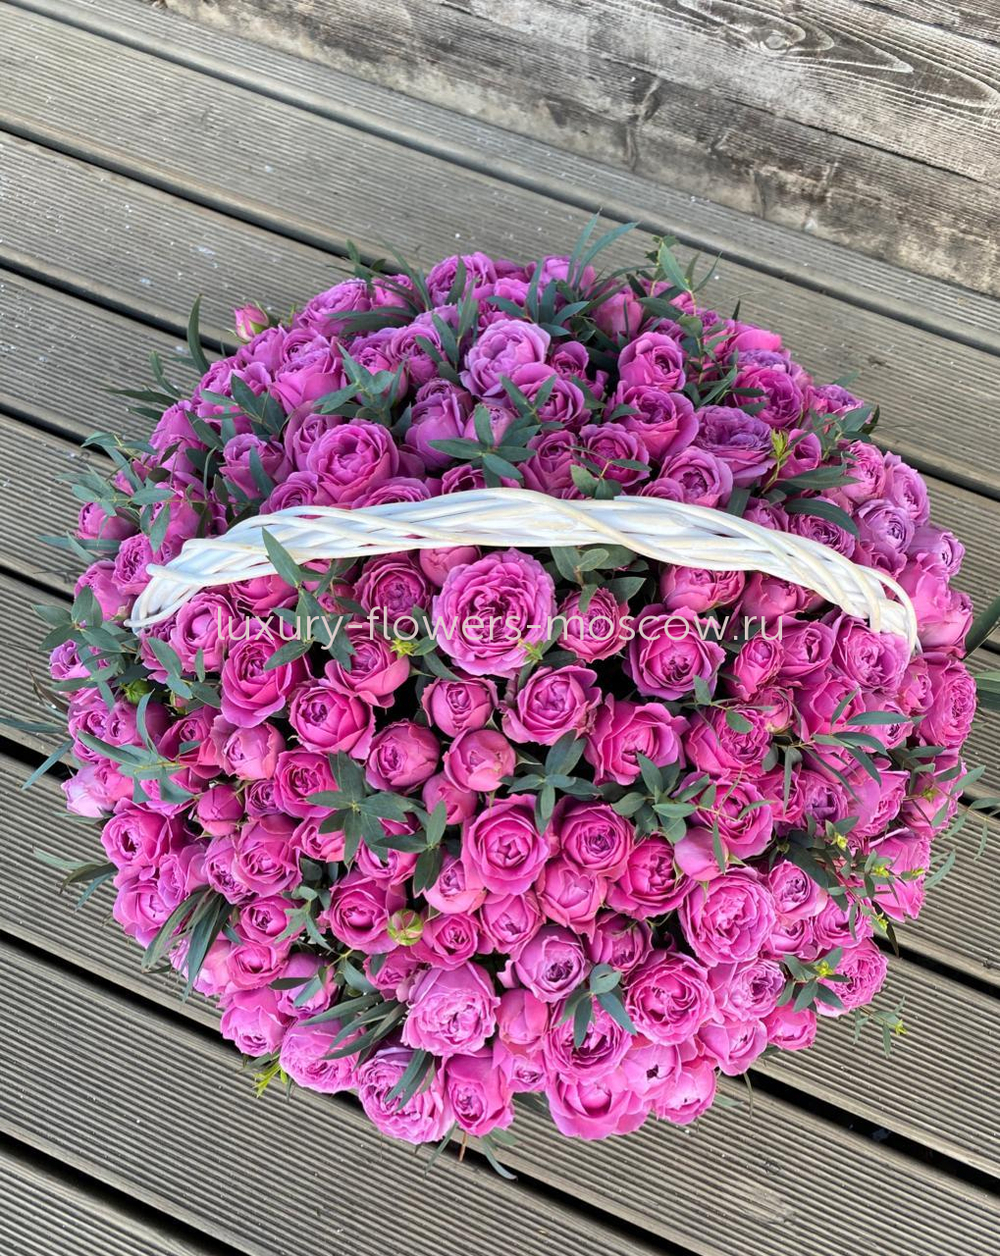 Пионовидные розы в корзине с зеленью 51шт